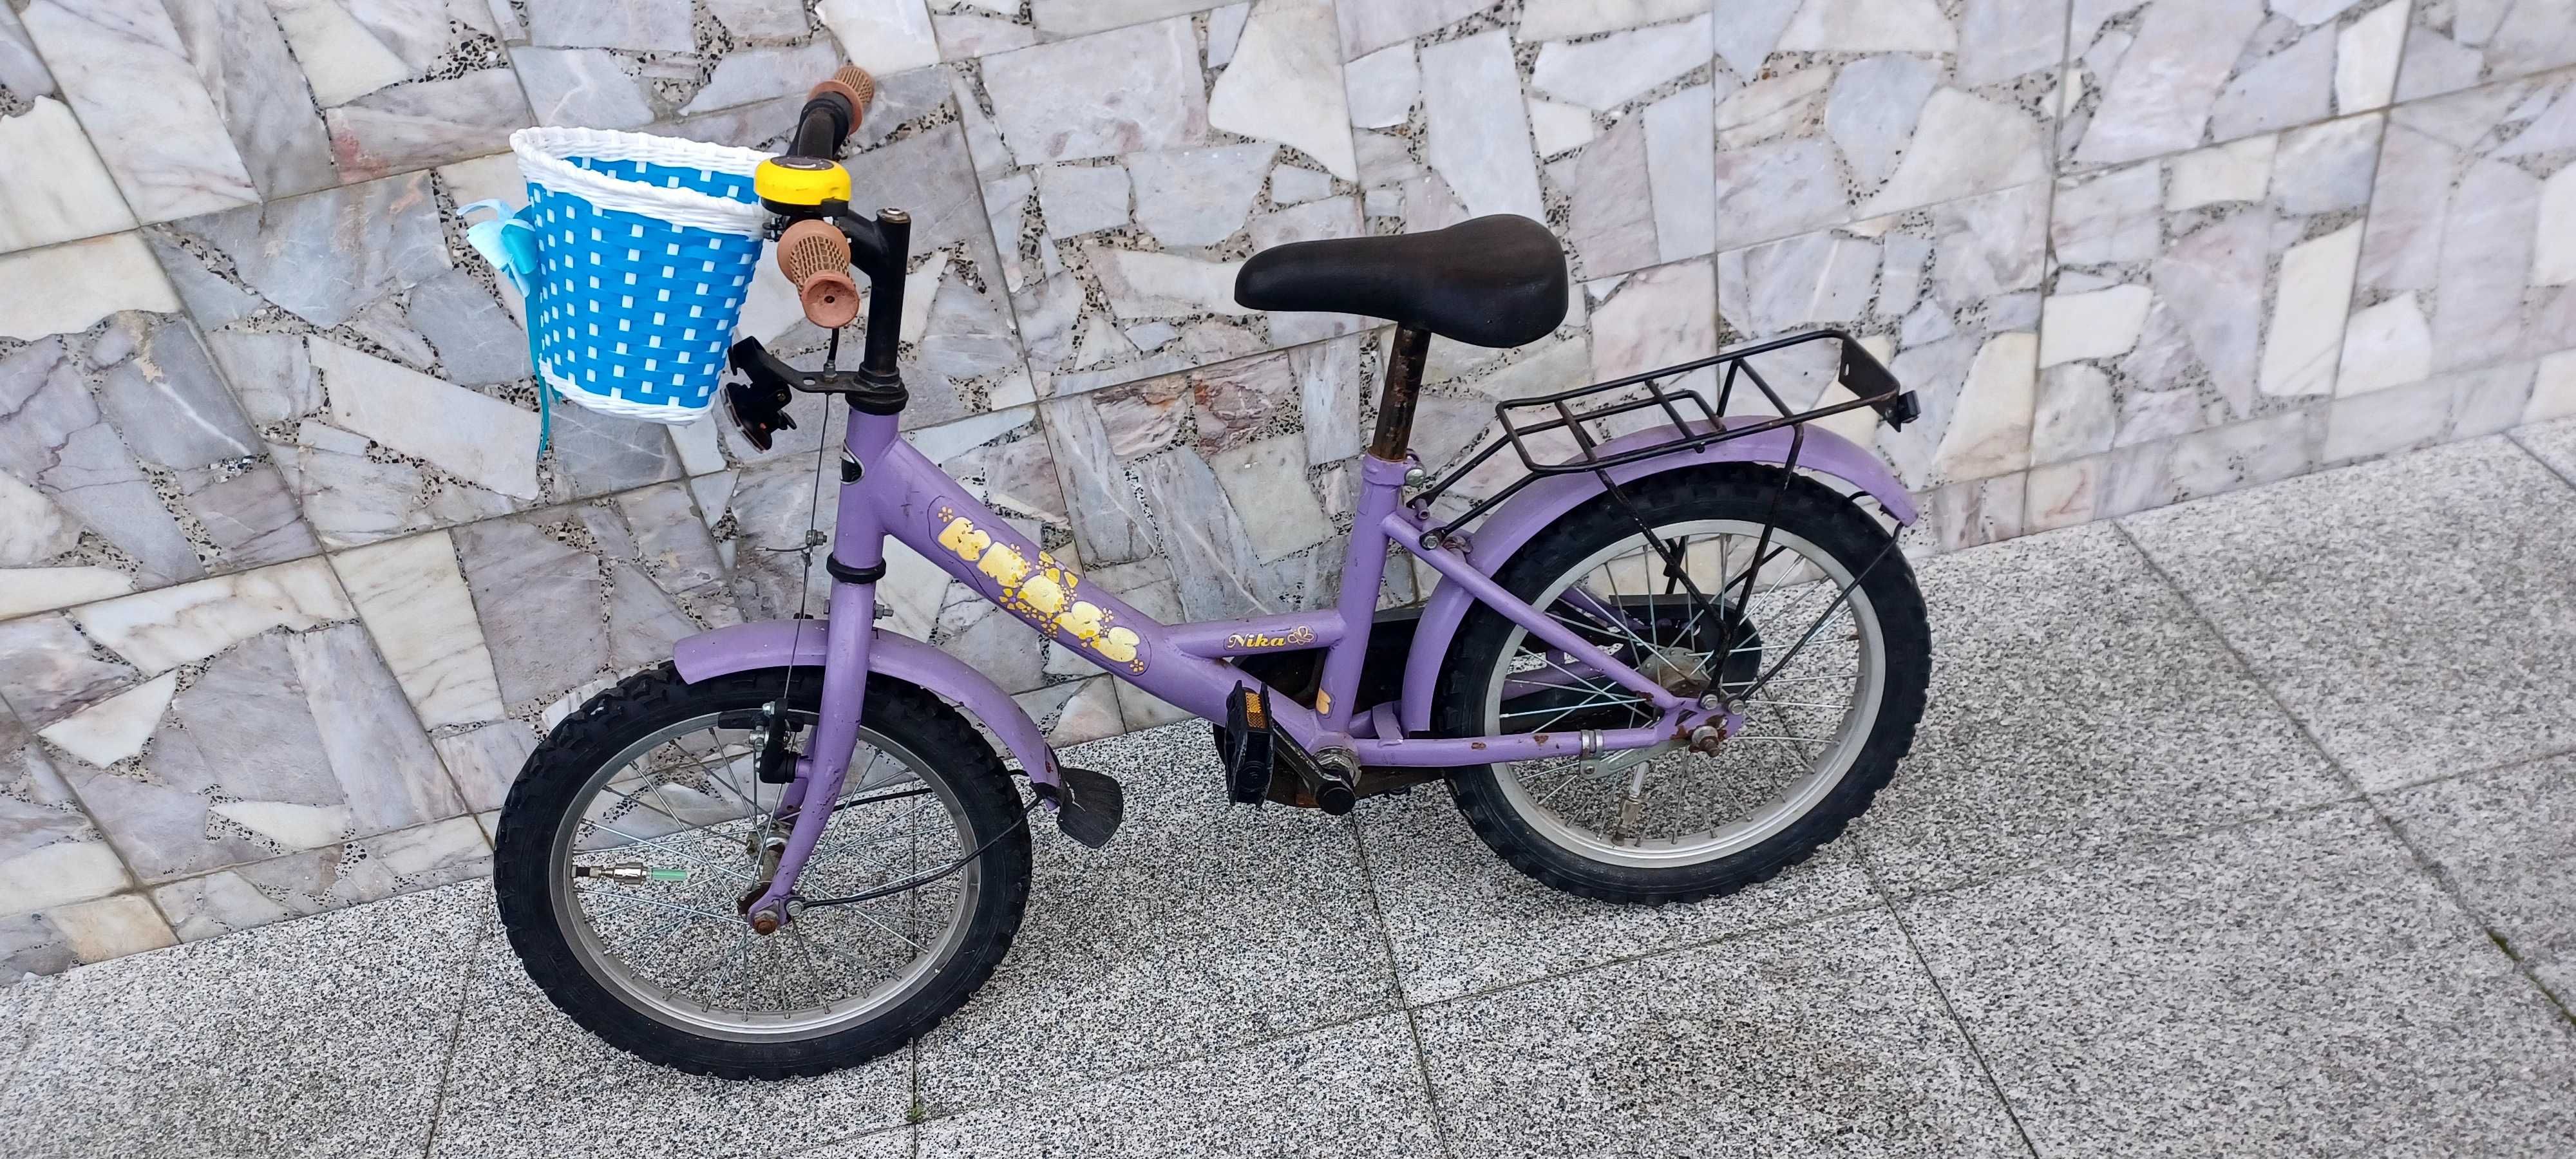 Rsprzedam rower dla dziewczynki  cena 120 zł do negocjacji.